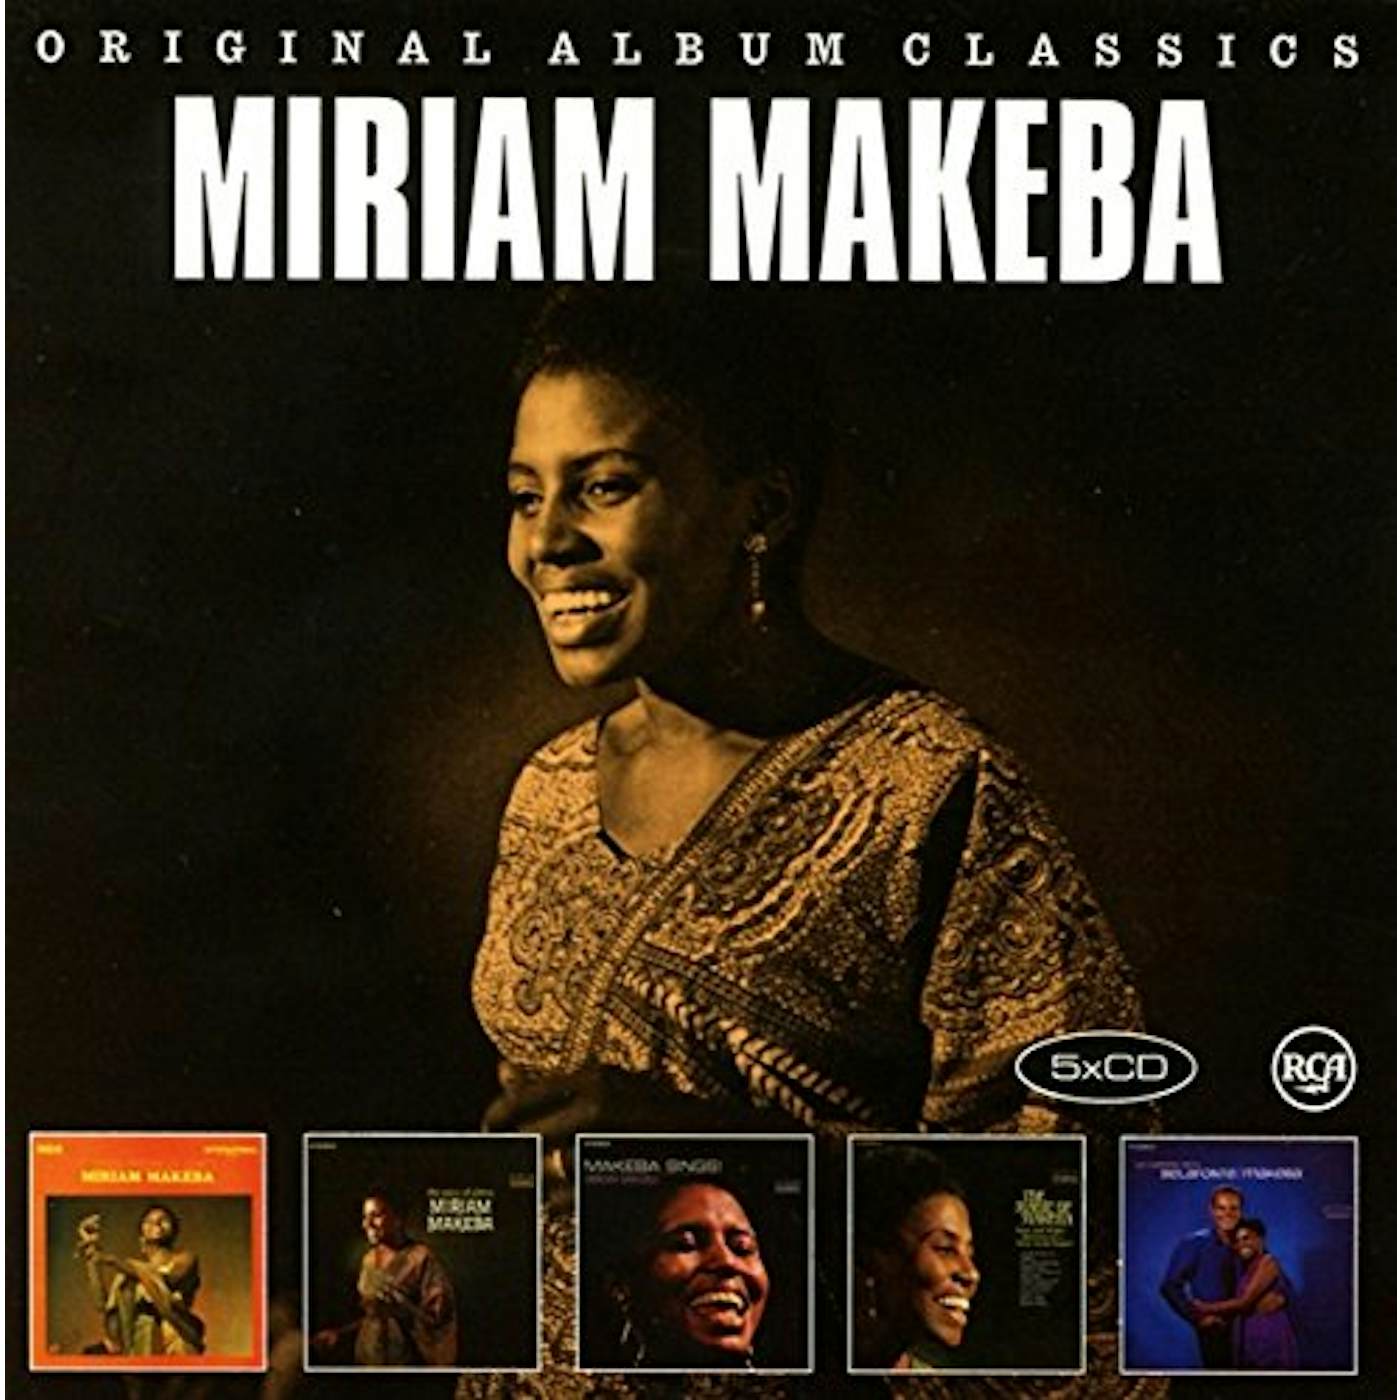 Miriam Makeba ORIGINAL ALBUM CLASSICS CD